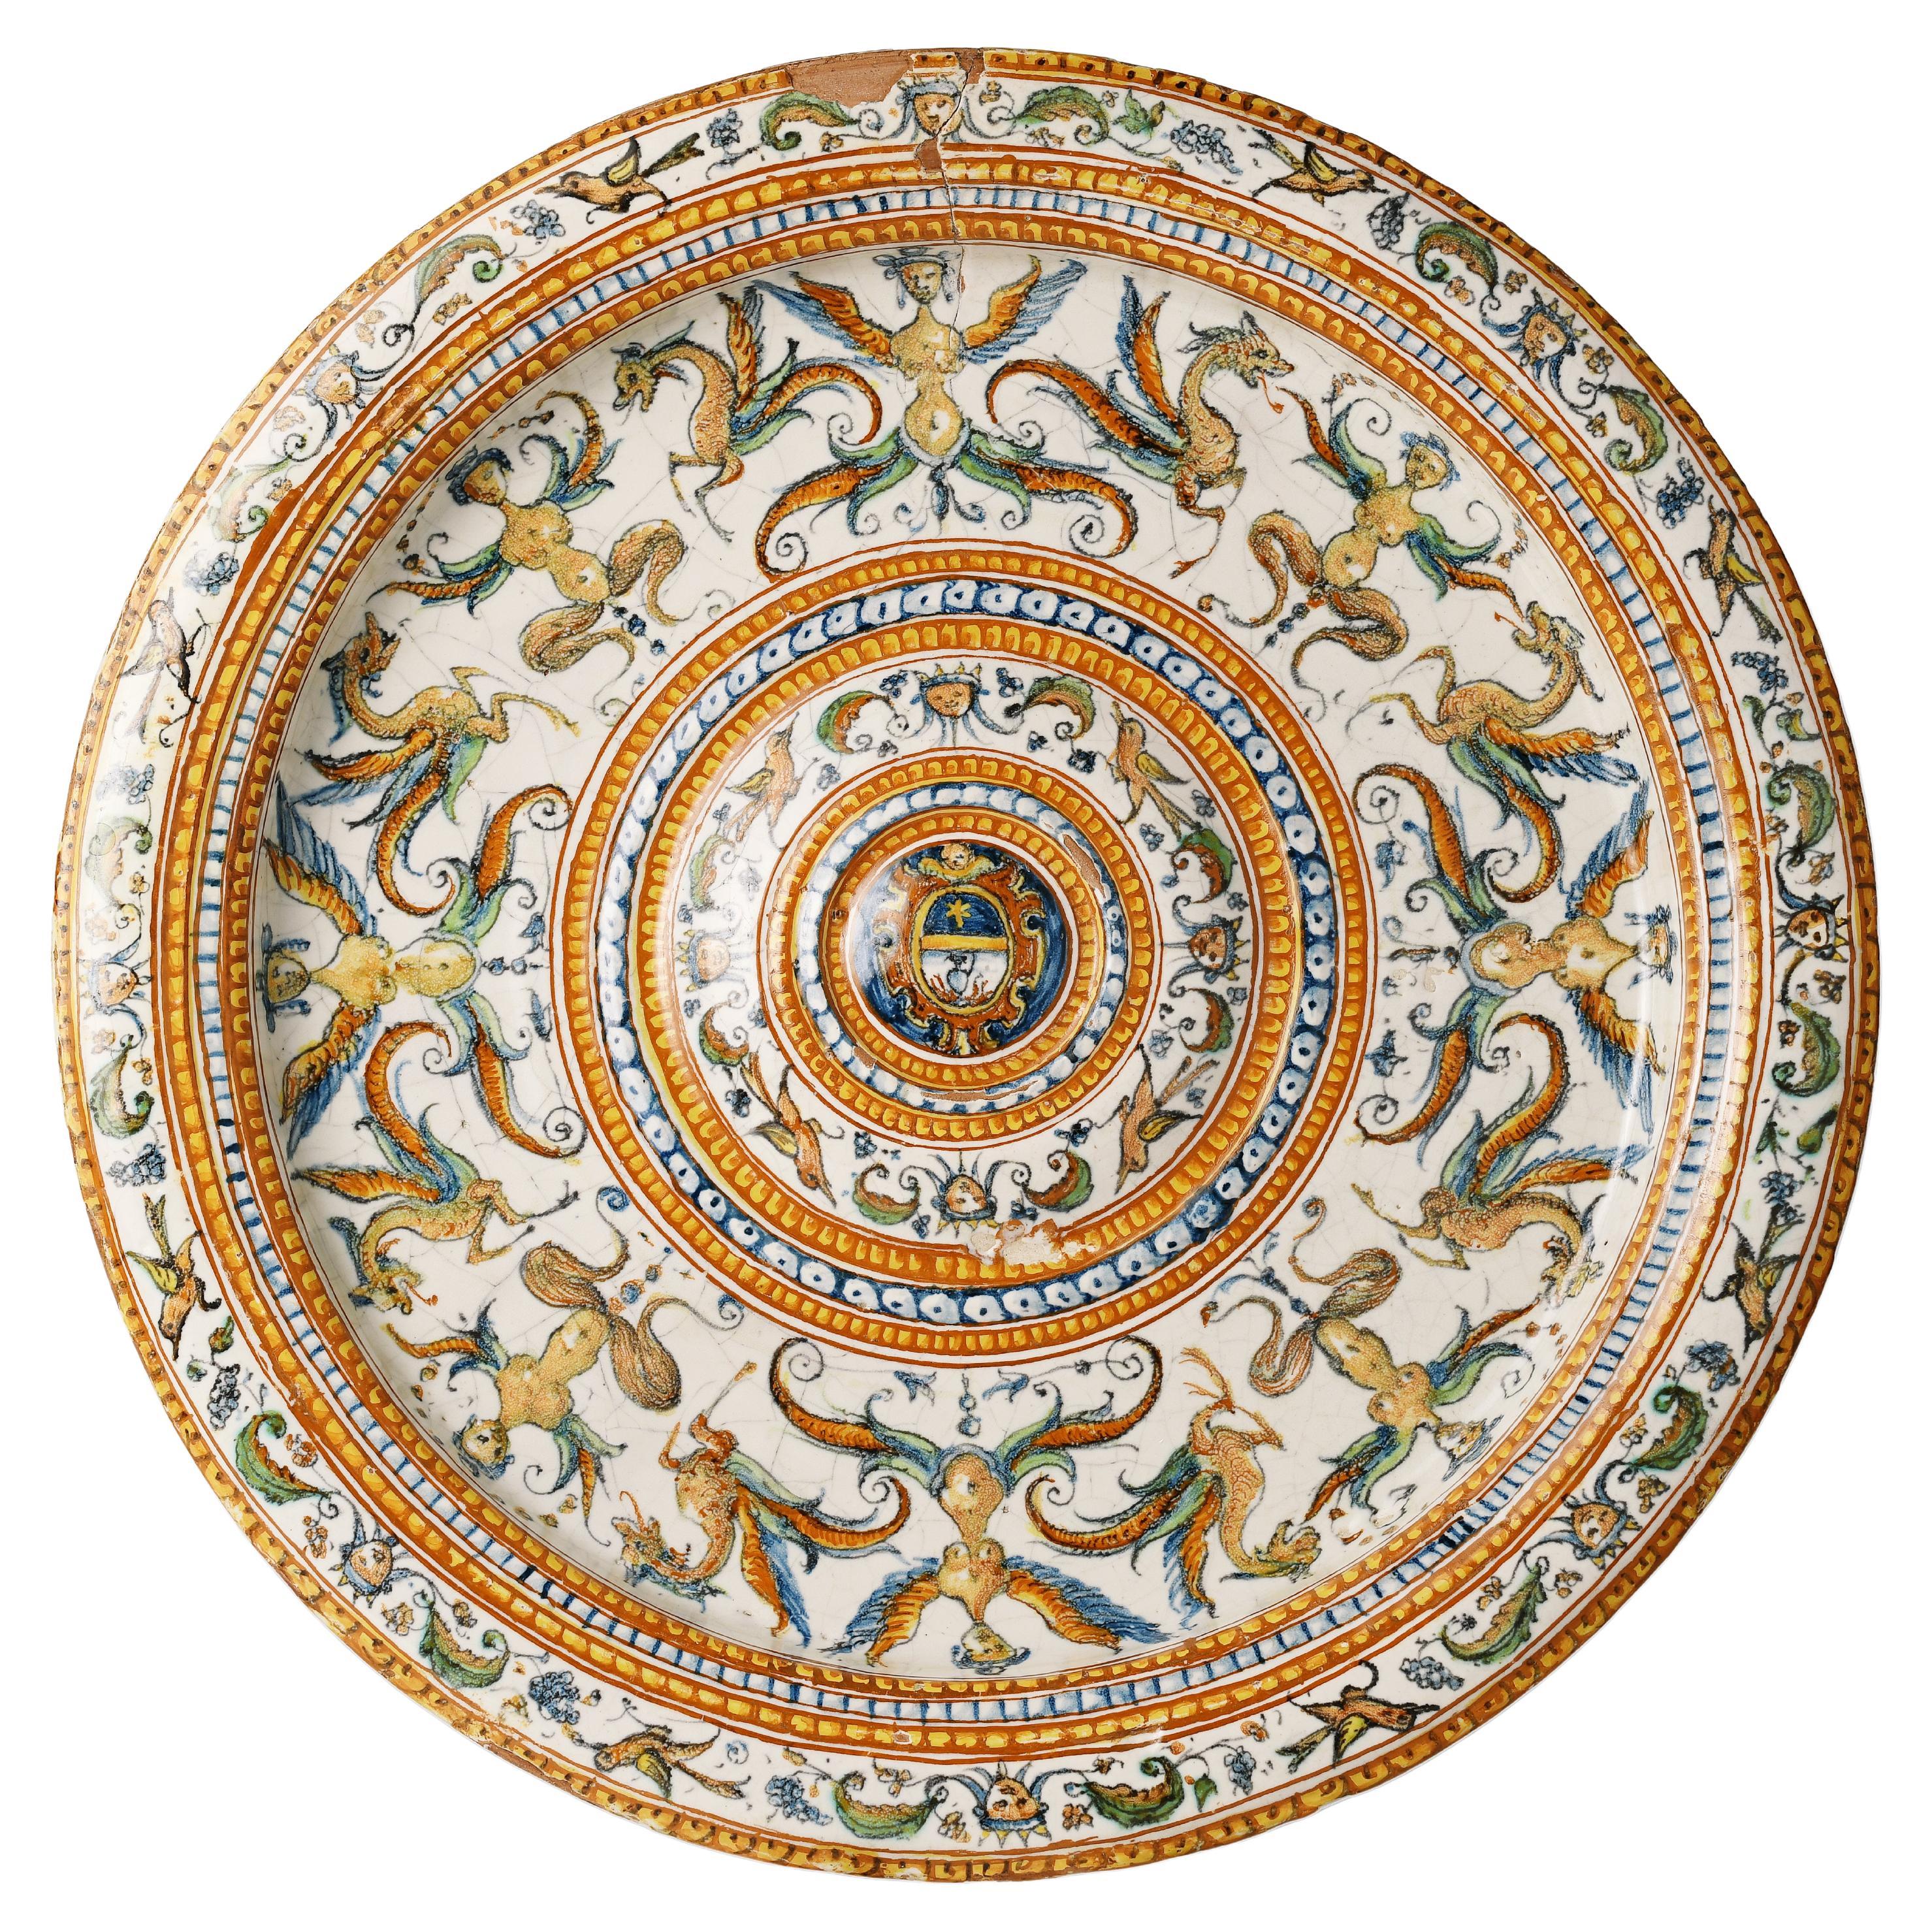 Italienischer Renaissance-Teller, Patanazzi Workshop Urbino, Ende des 16. Jahrhunderts